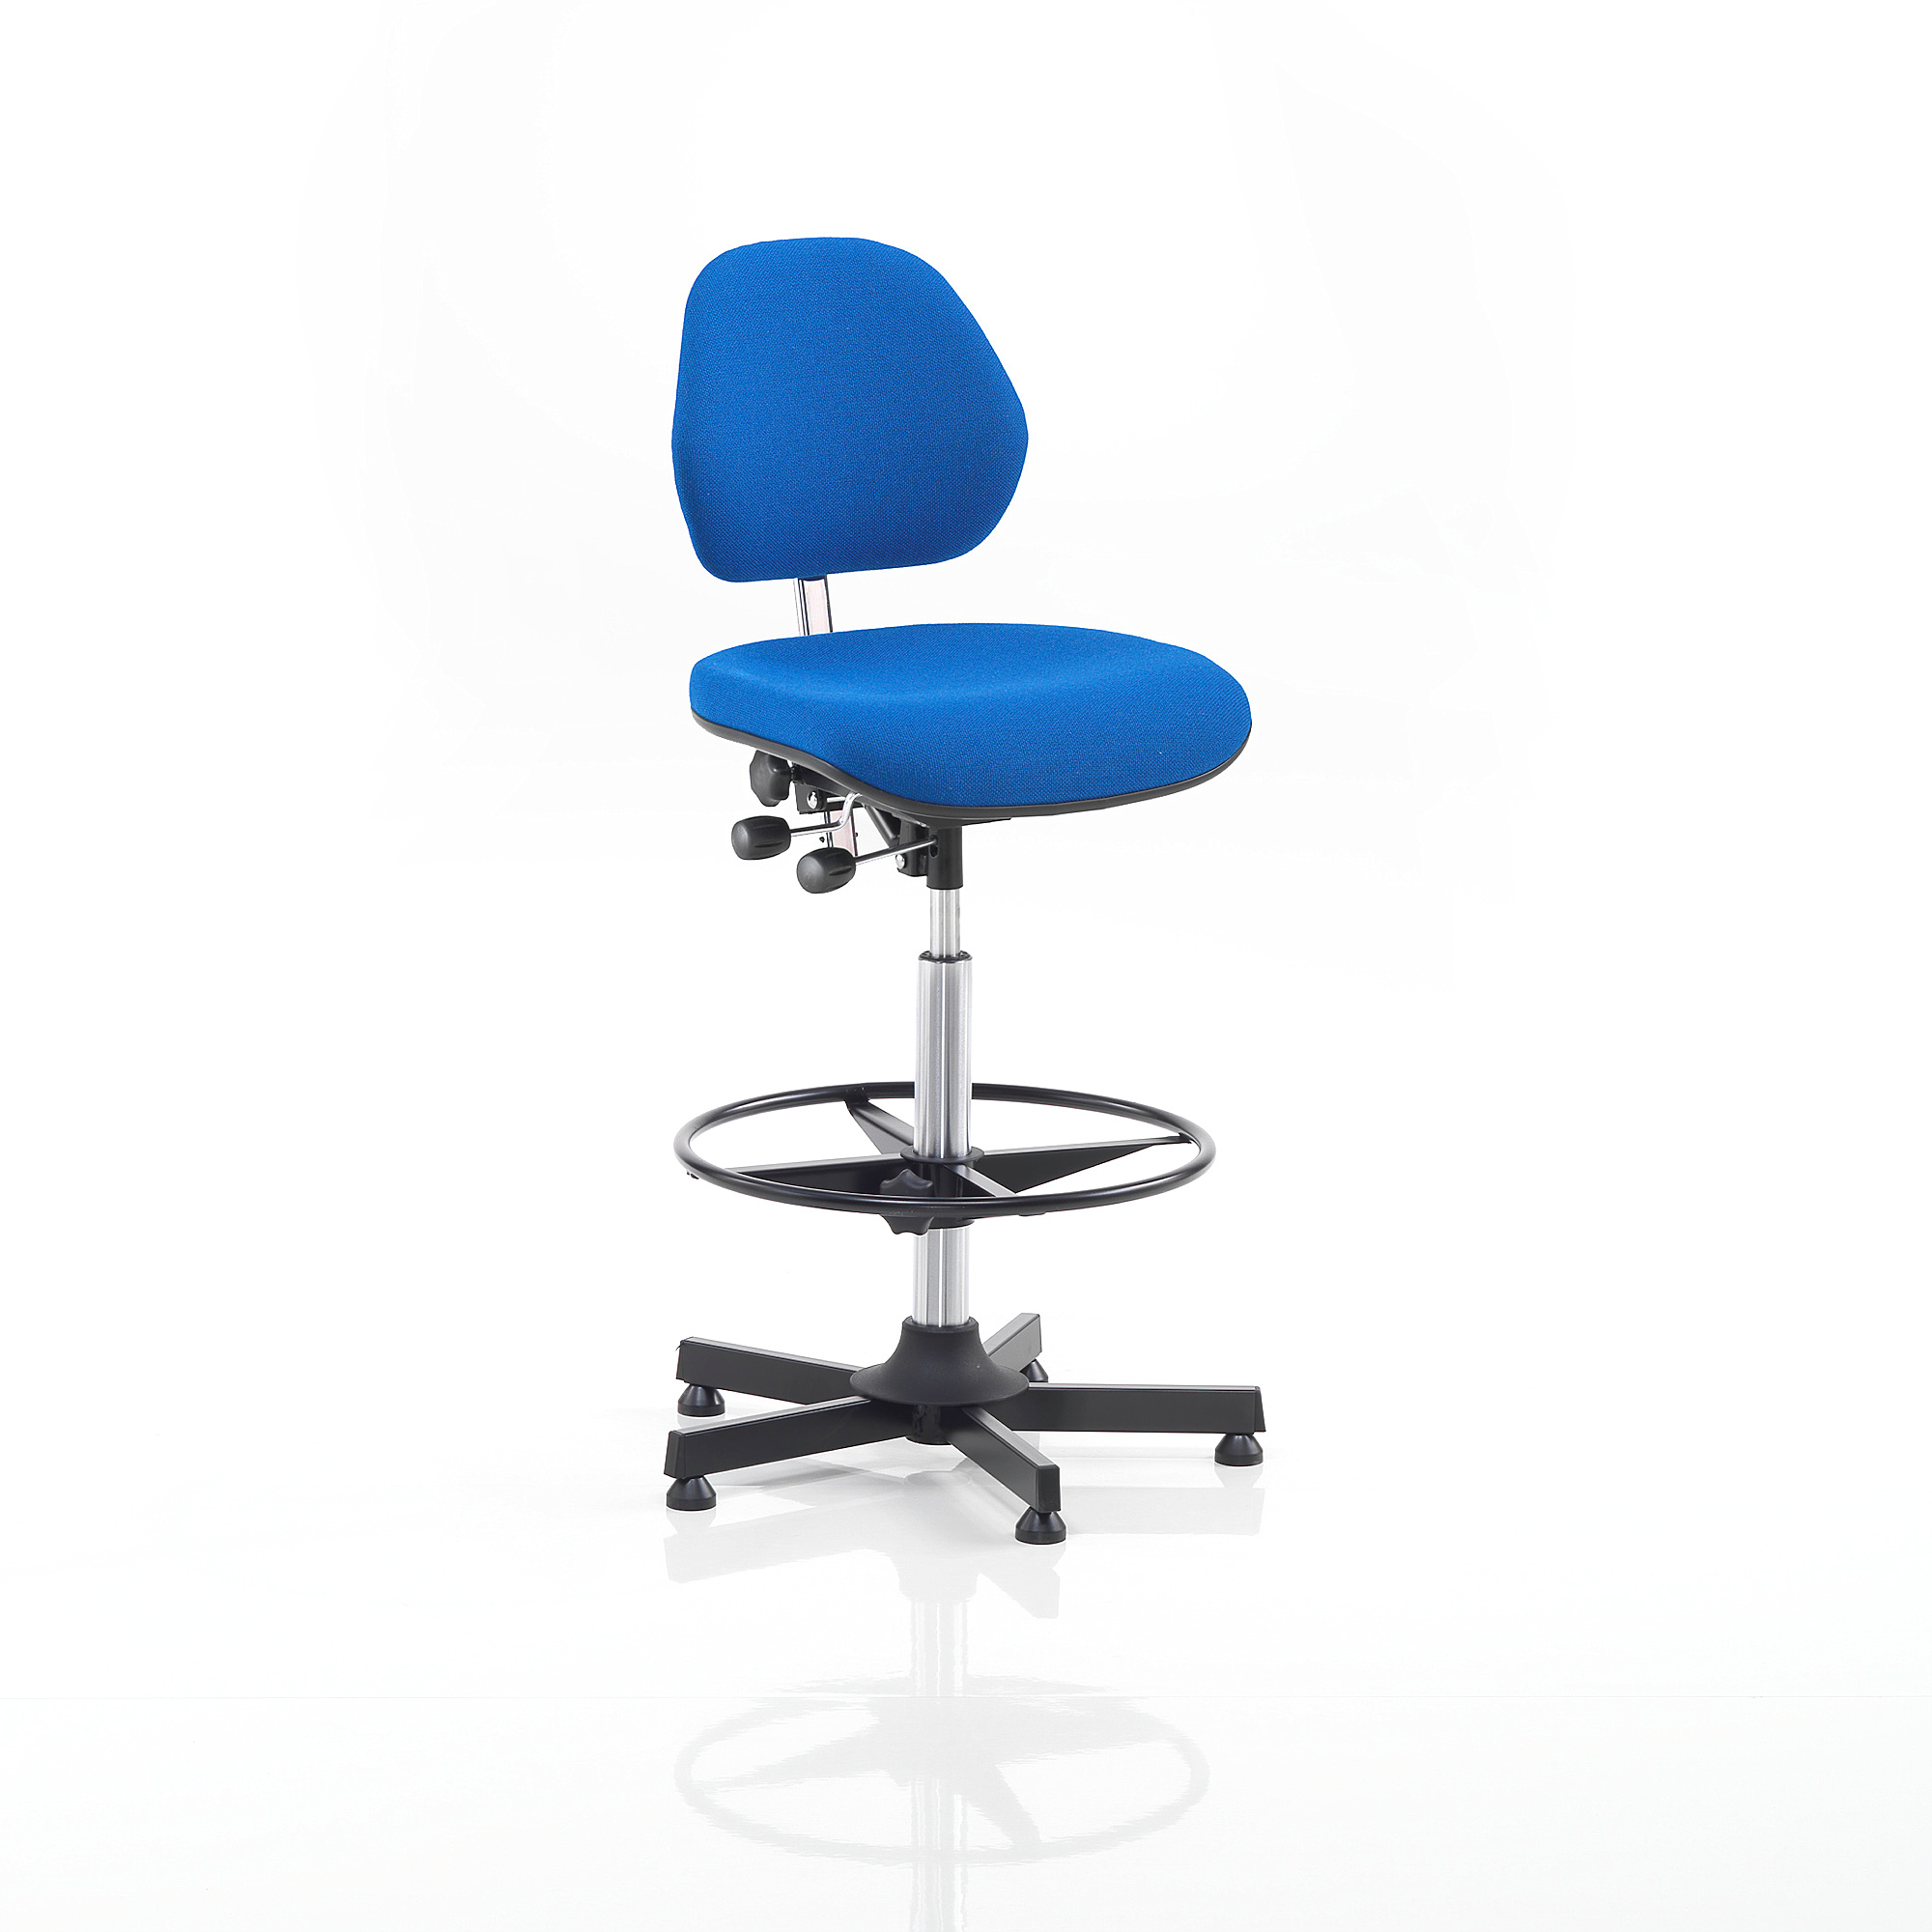 Pracovná dielenská stolička AUGUSTA, výška 650-900 mm, modrá